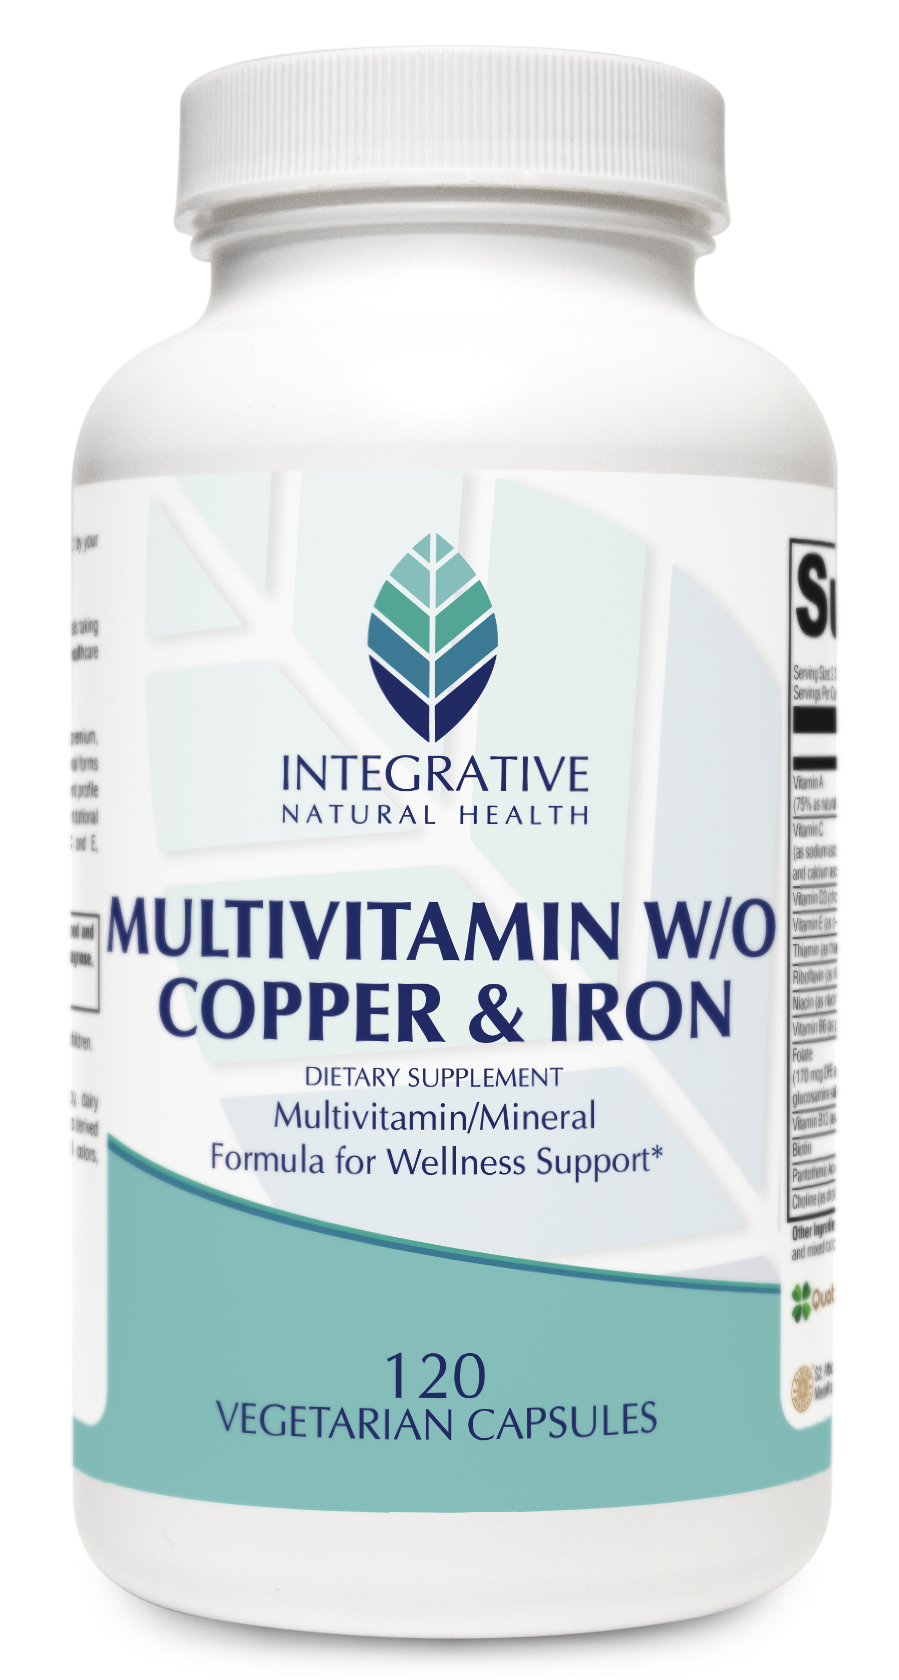 Multivitamin W/O Copper & Iron